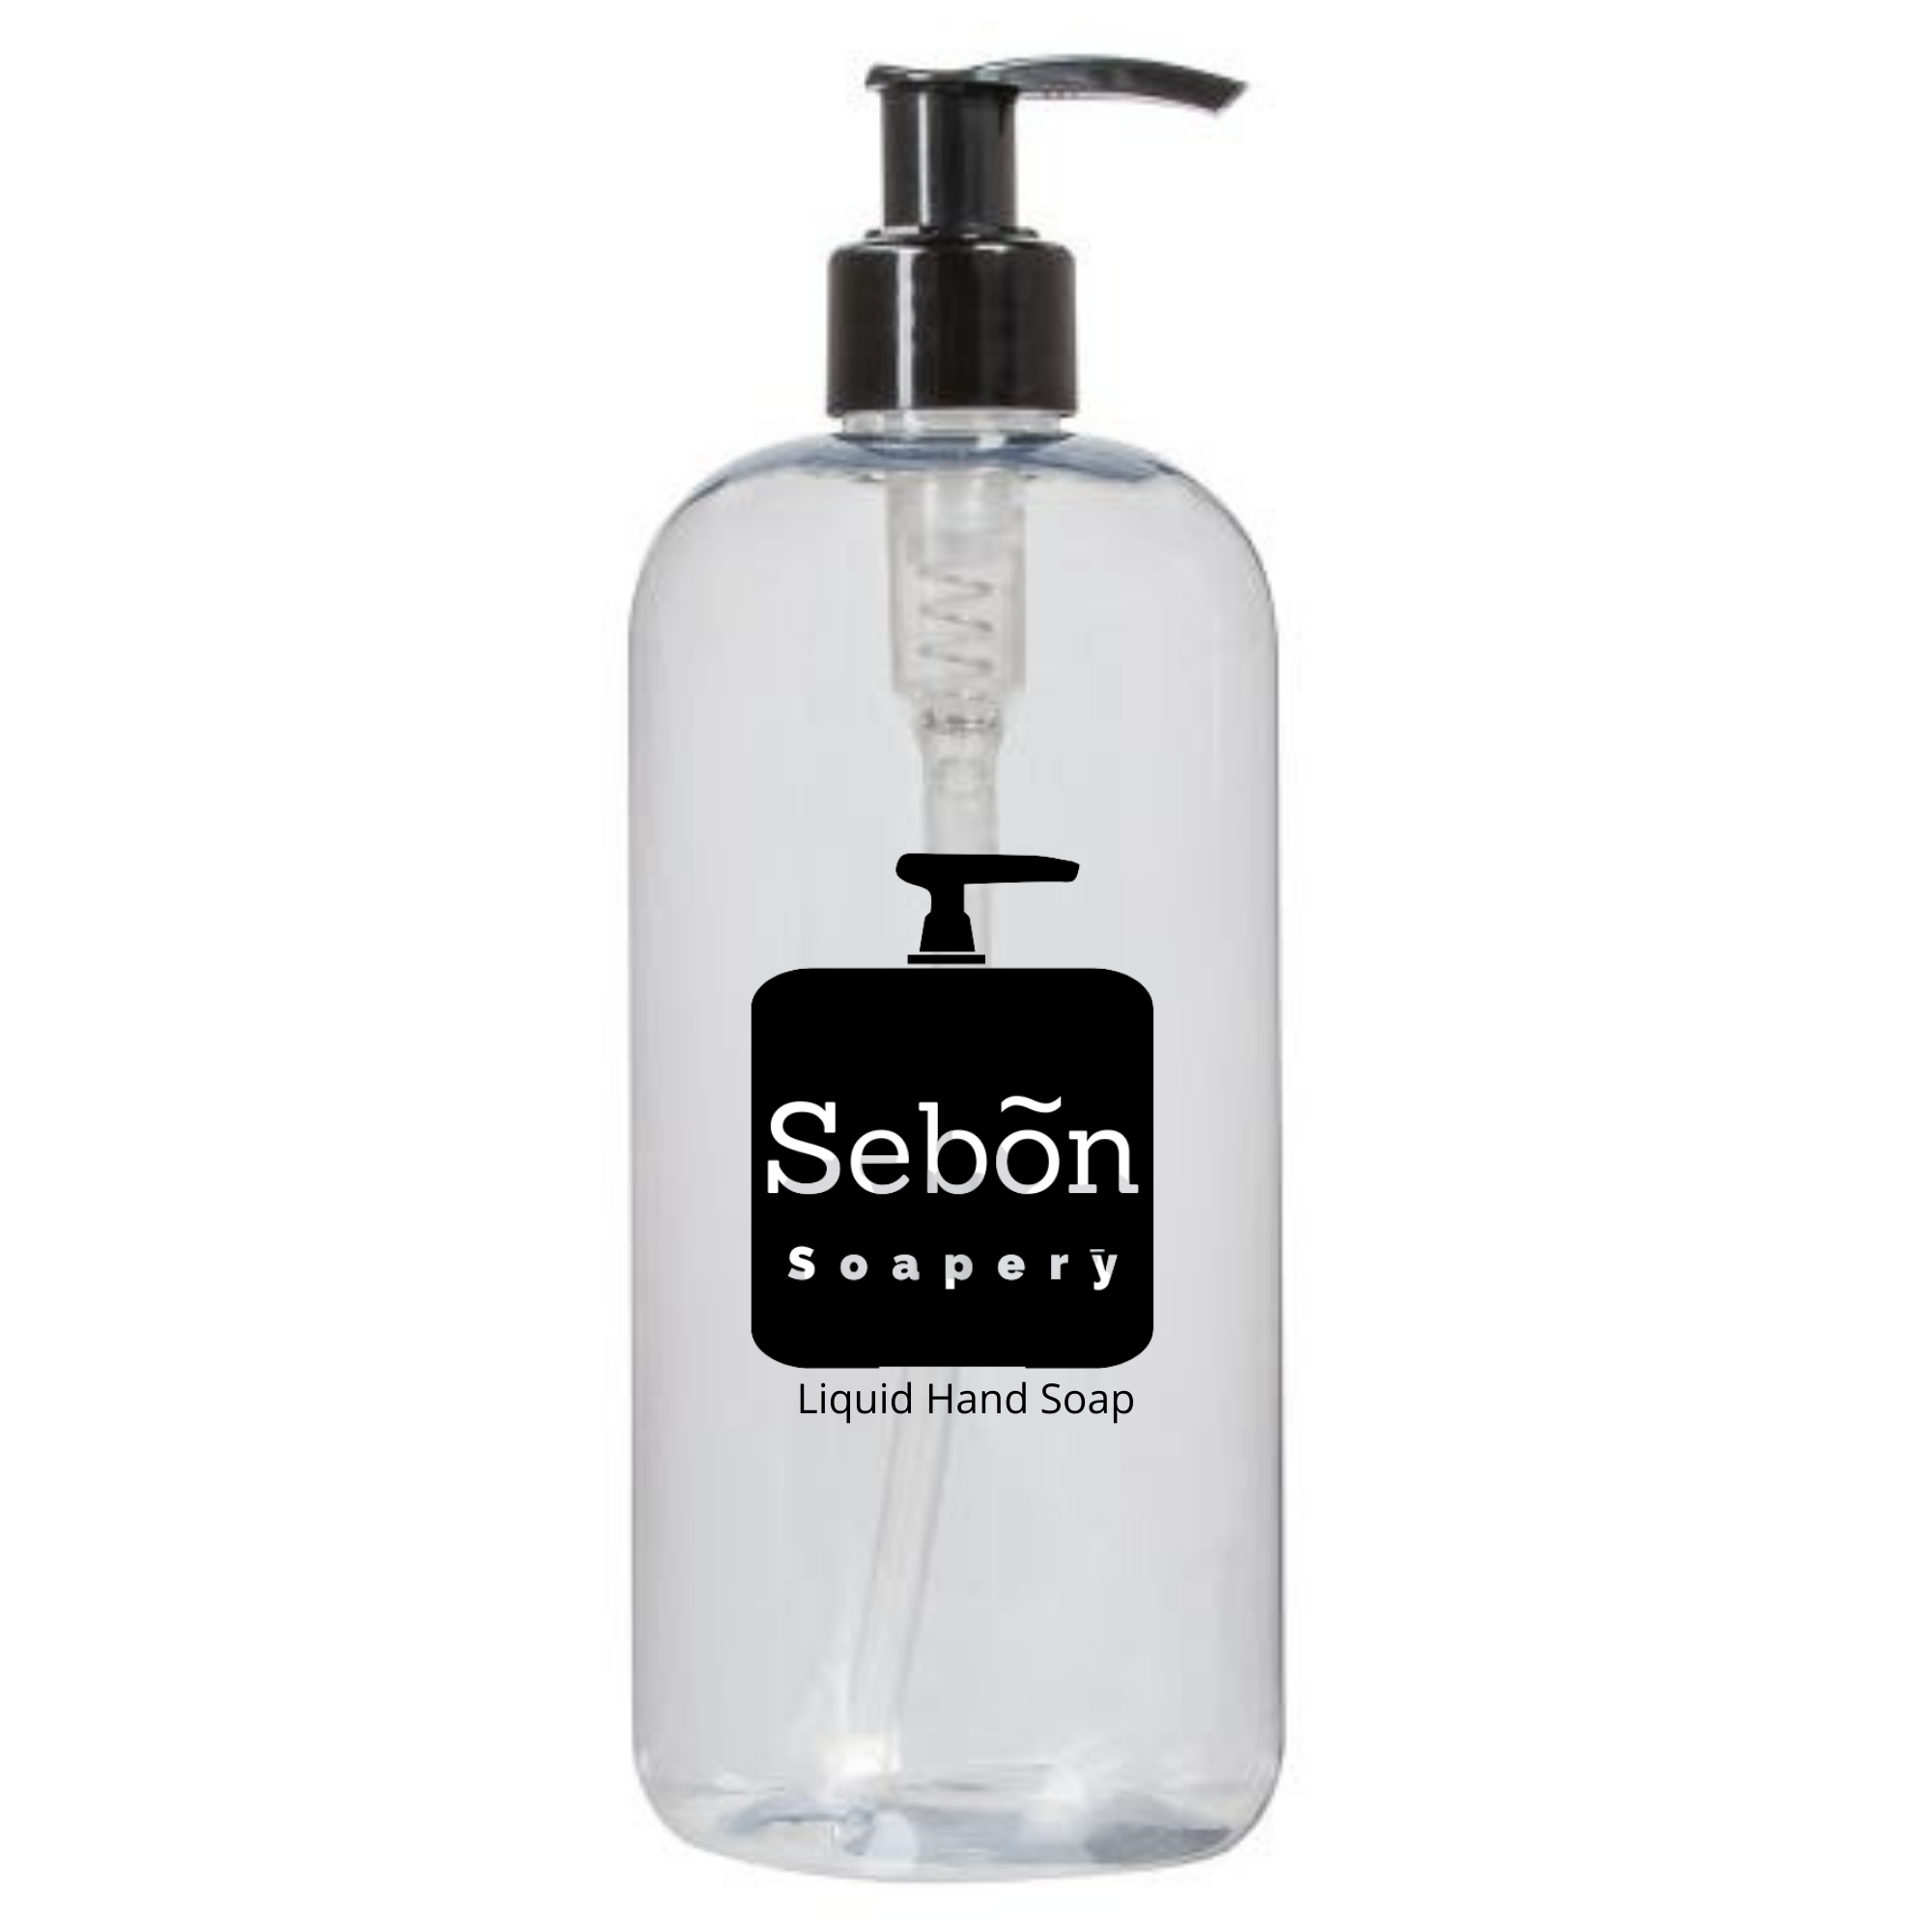 Sebon Daffodil Dream Scented Scented Liquid Hand Soap with Olive Oil